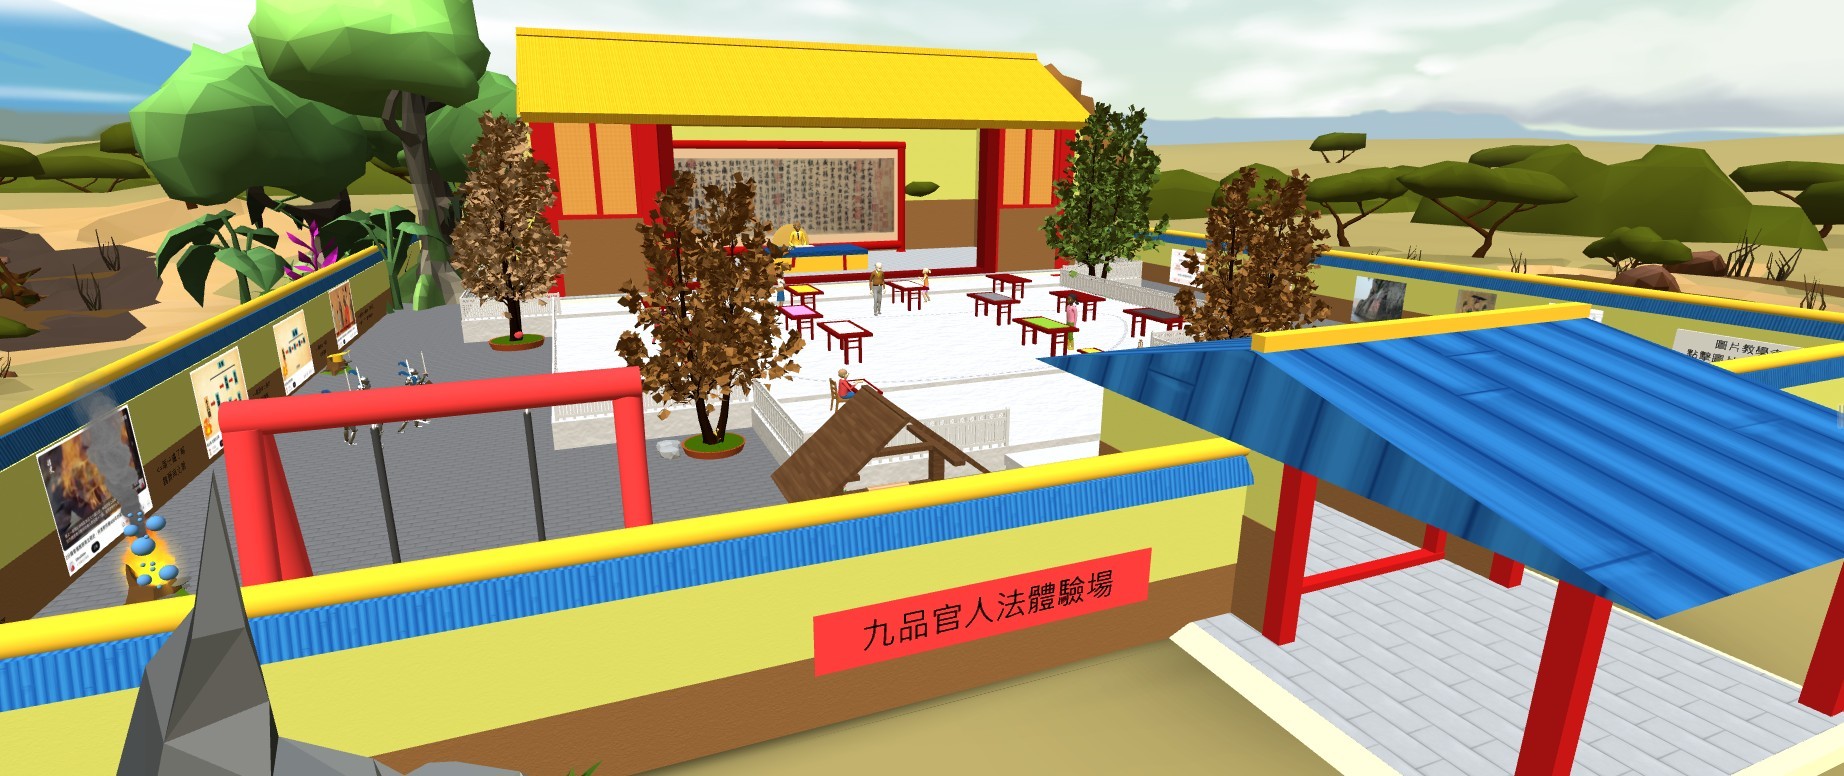 图为亚大商应系同学得奖作品「魏晋南北朝VR历史体验营」，设计的VR场景。